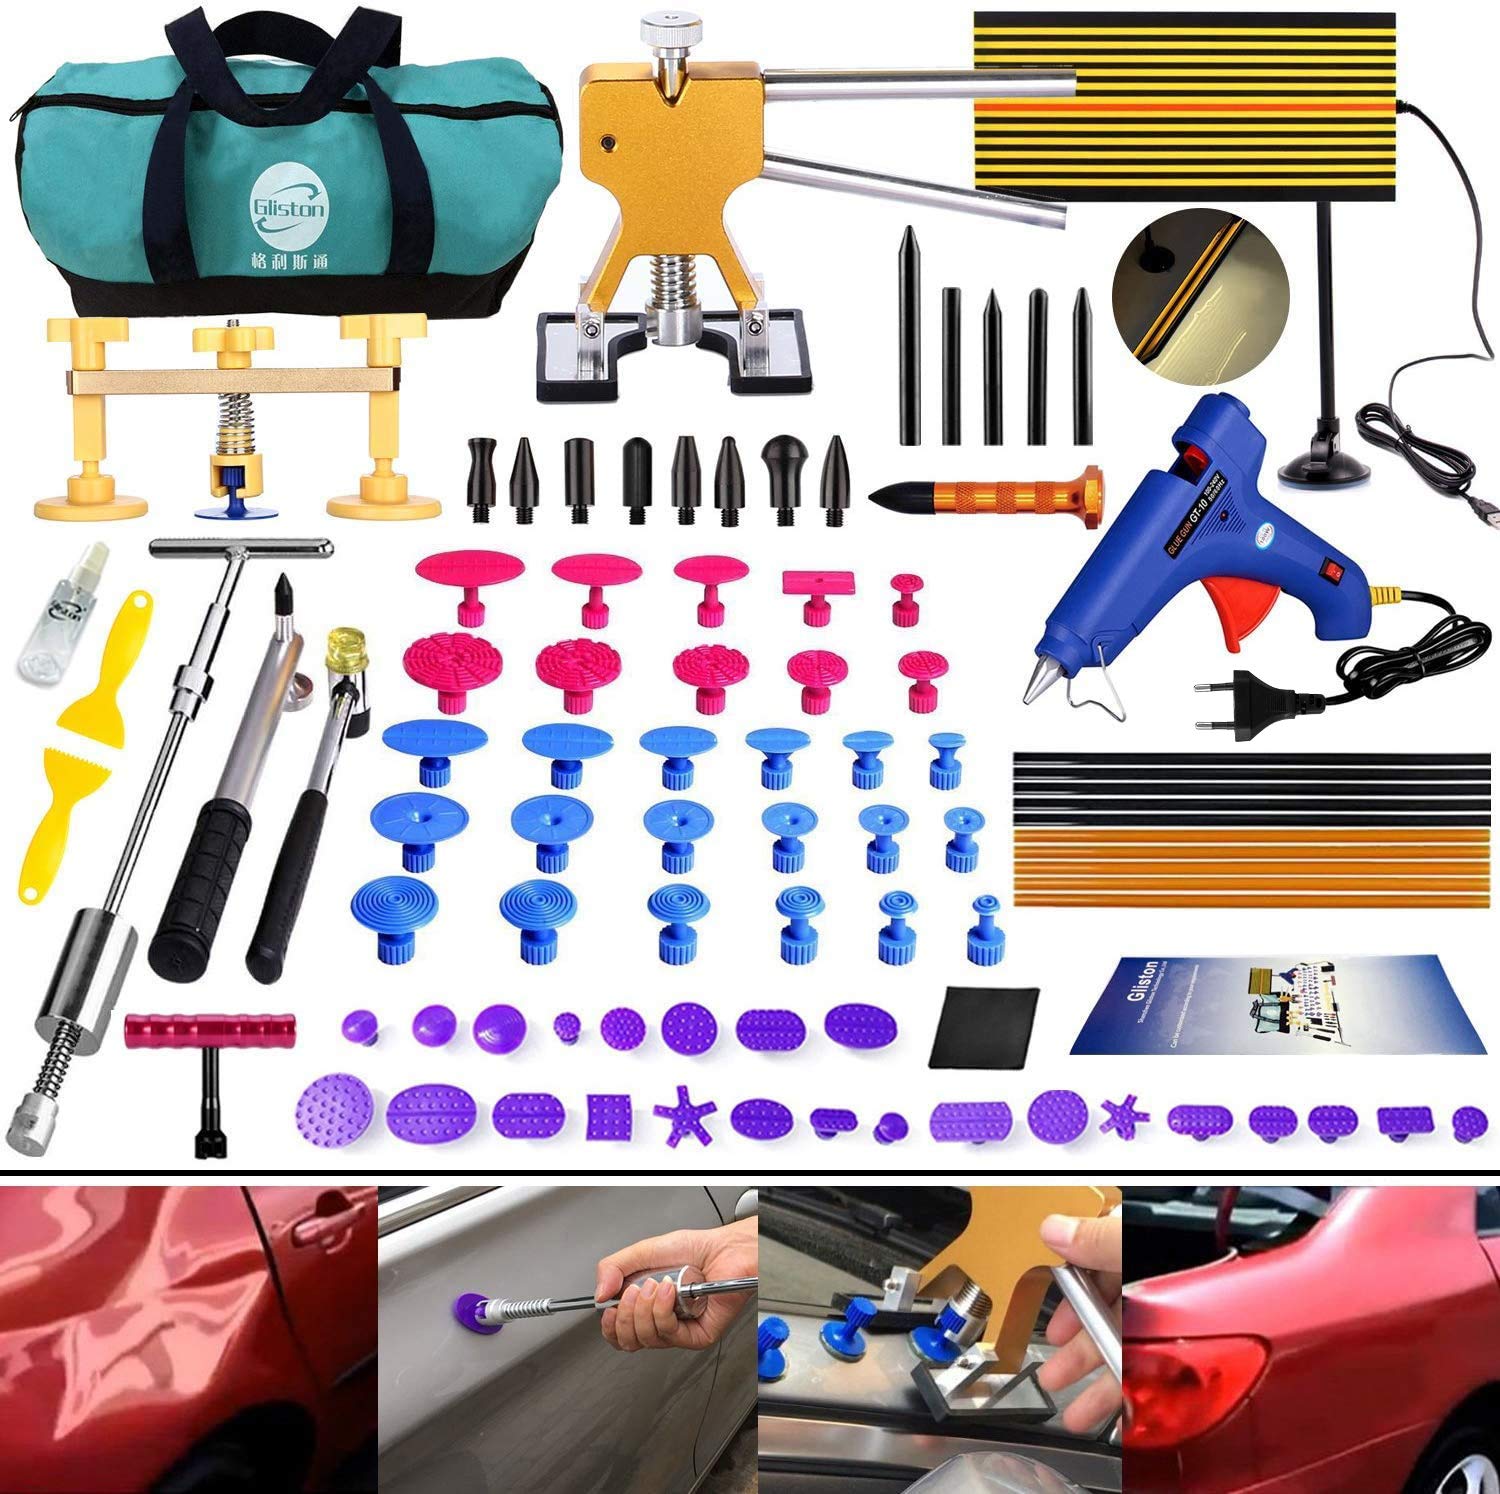 Randalfy DIY Paintless Ausbeulwerkzeug Dent Repair Kit 89er Dellen Reparaturset Dent Puller Gleithammer für Auto Hagelschaden Dent & Ding Remover von Randalfy